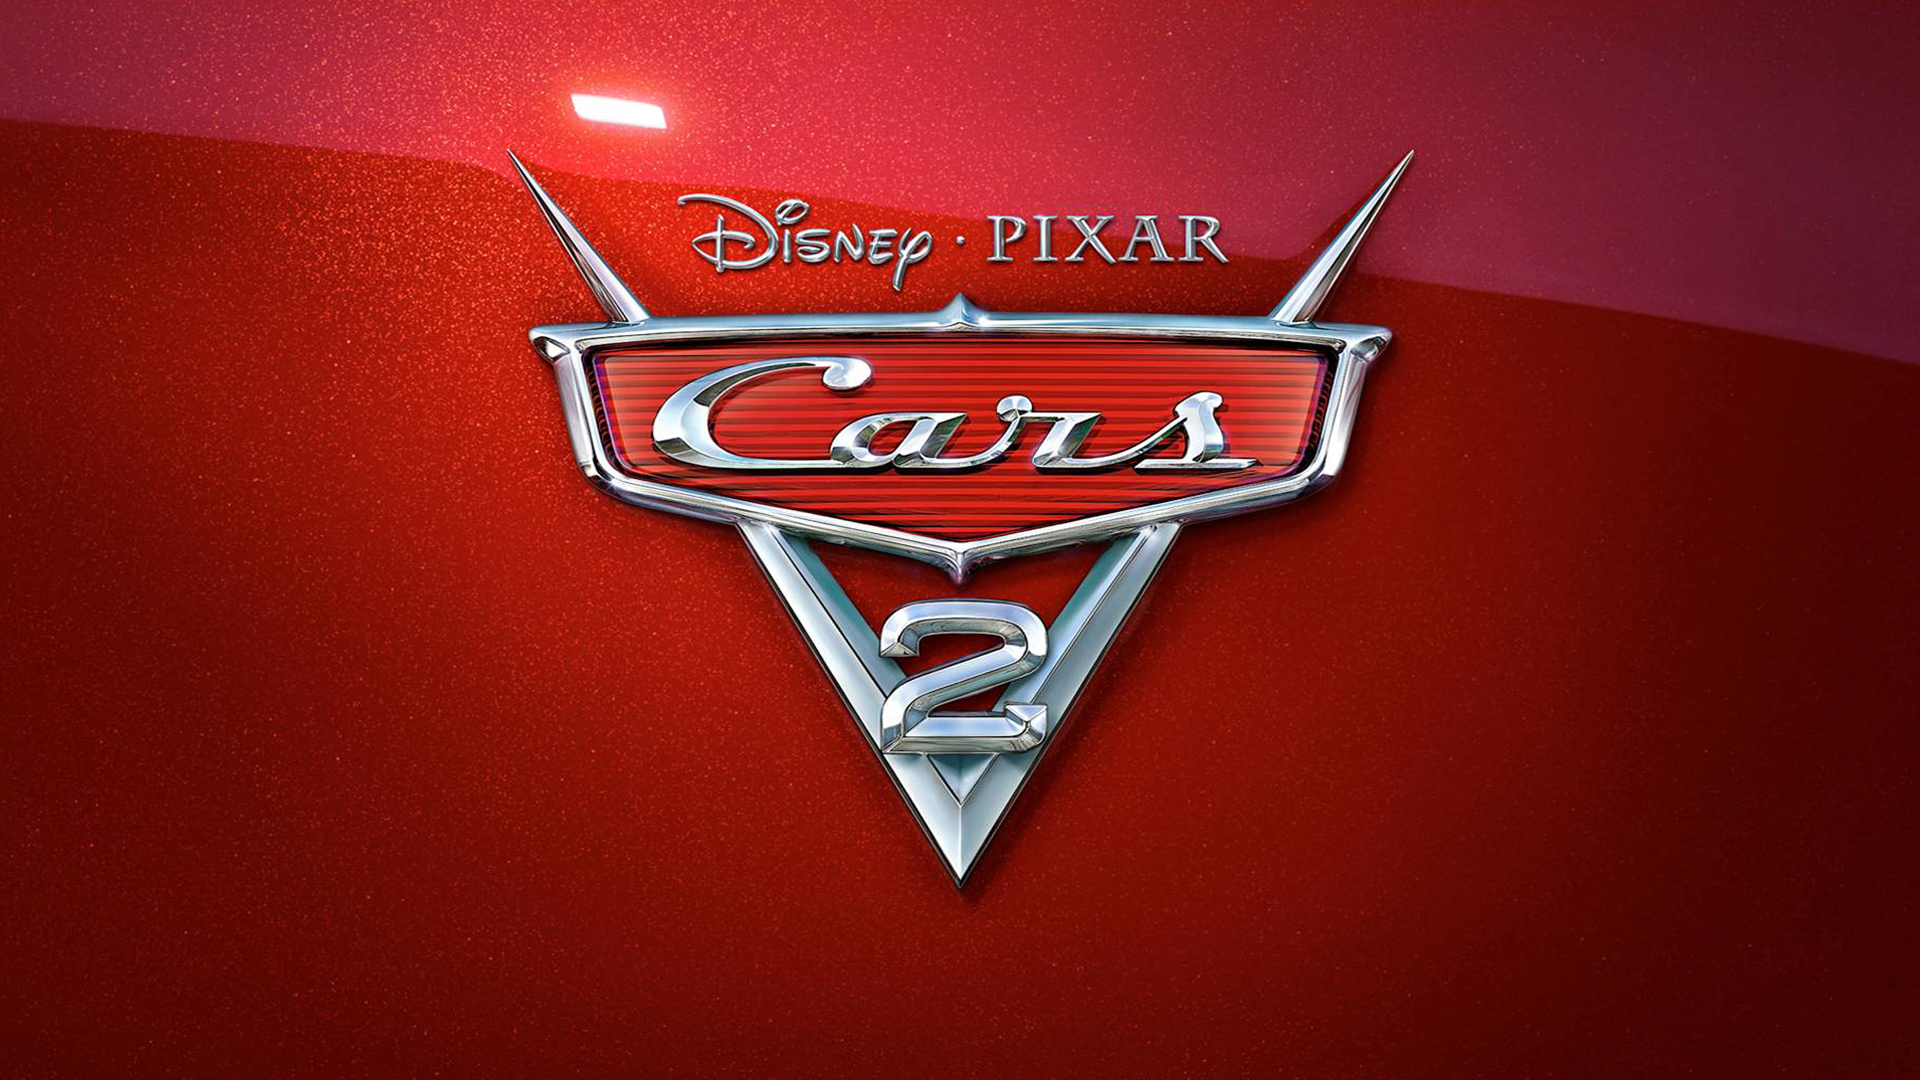 Disney Pixar Cars 2 2011 Wallpapers HD Wallpapers